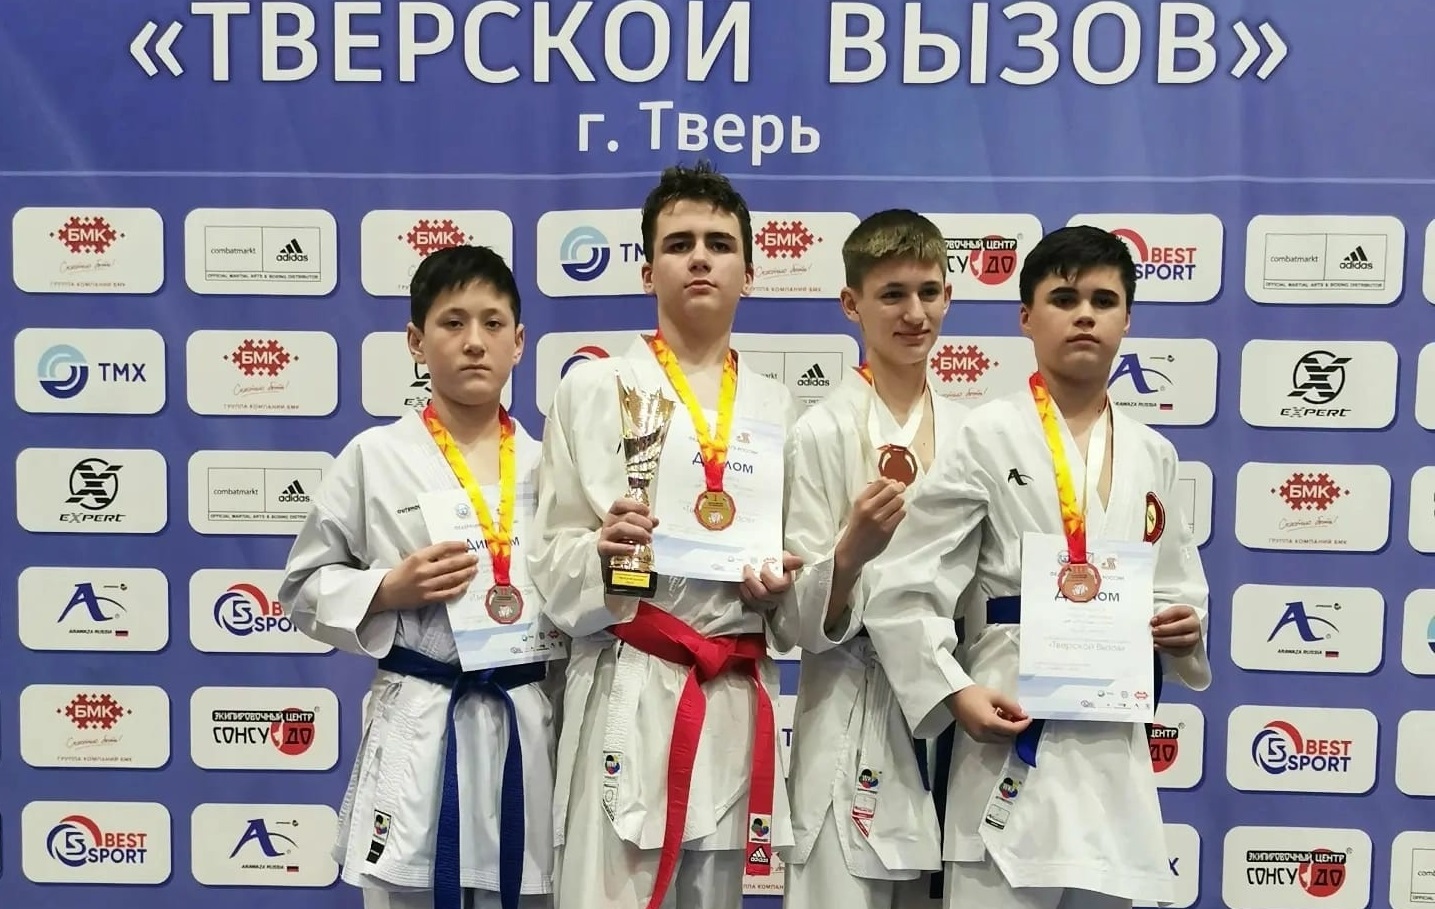 Пять медалей завоевали воспитанники МЦБИ на Всероссийских соревнованиях по каратэ